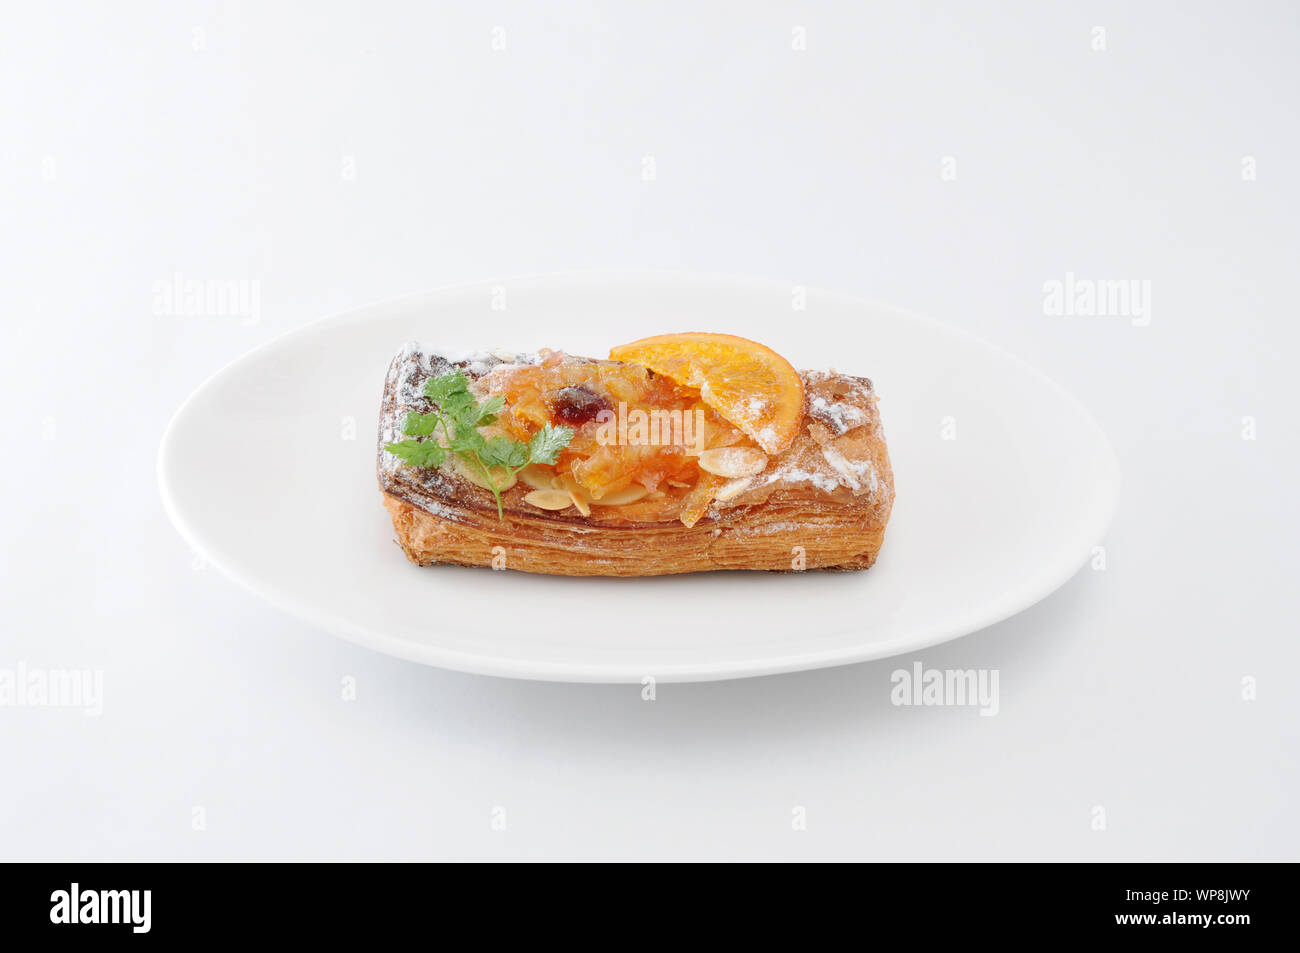 orange marmalade tart pie on white background Stock Photo